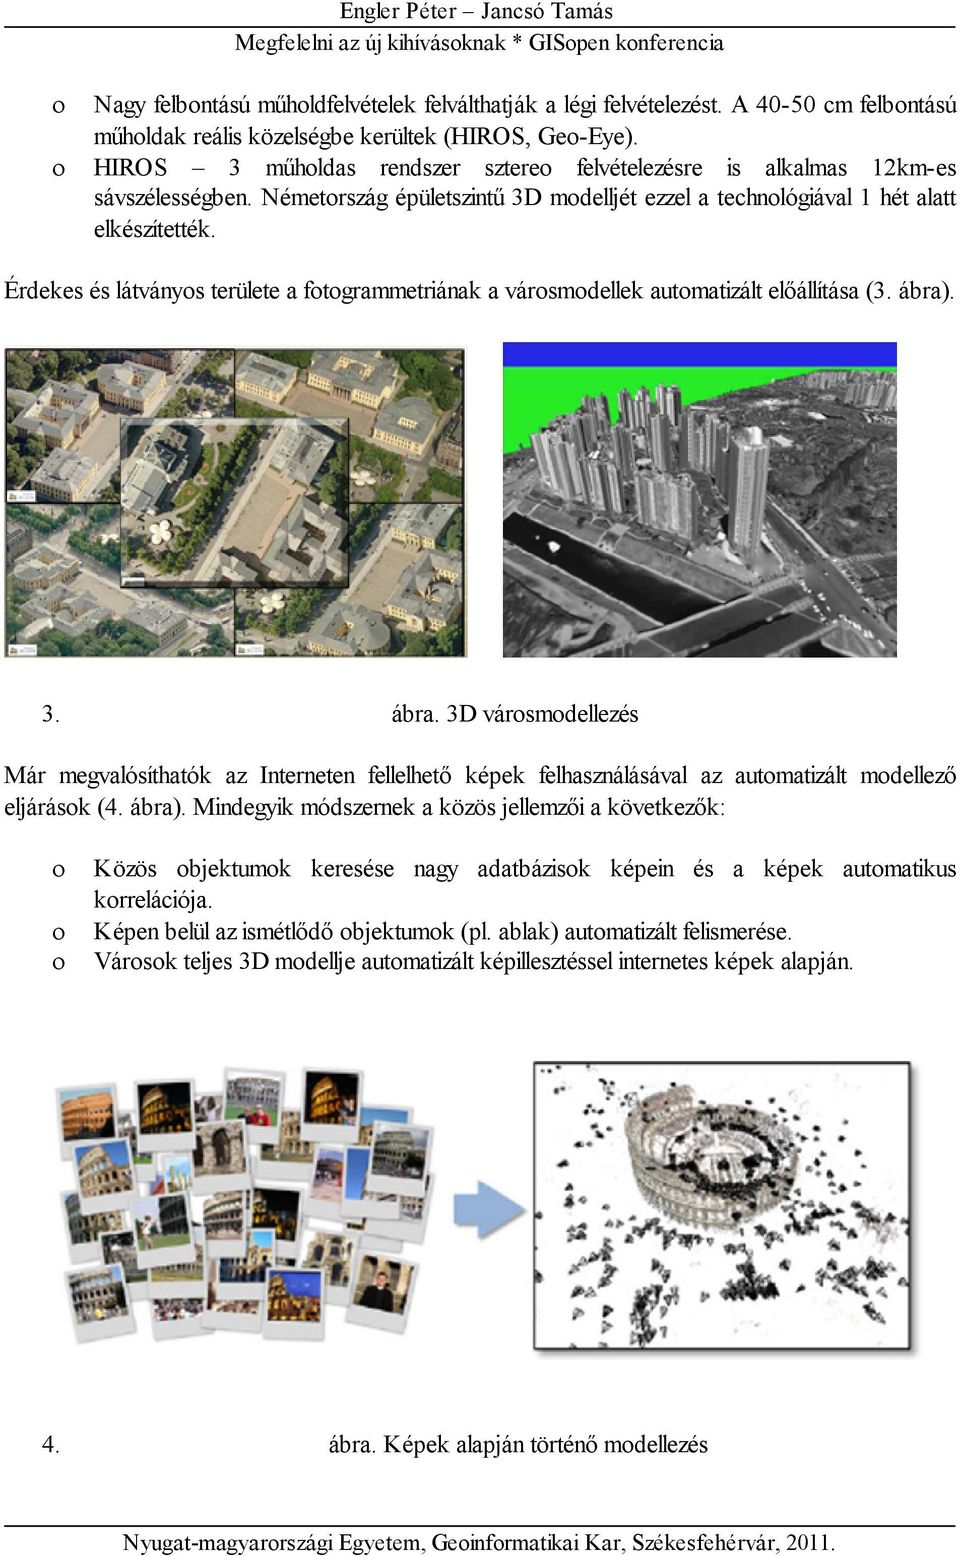 Érdekes és látványos területe a fotogrammetriának a városmodellek automatizált előállítása (3. ábra)